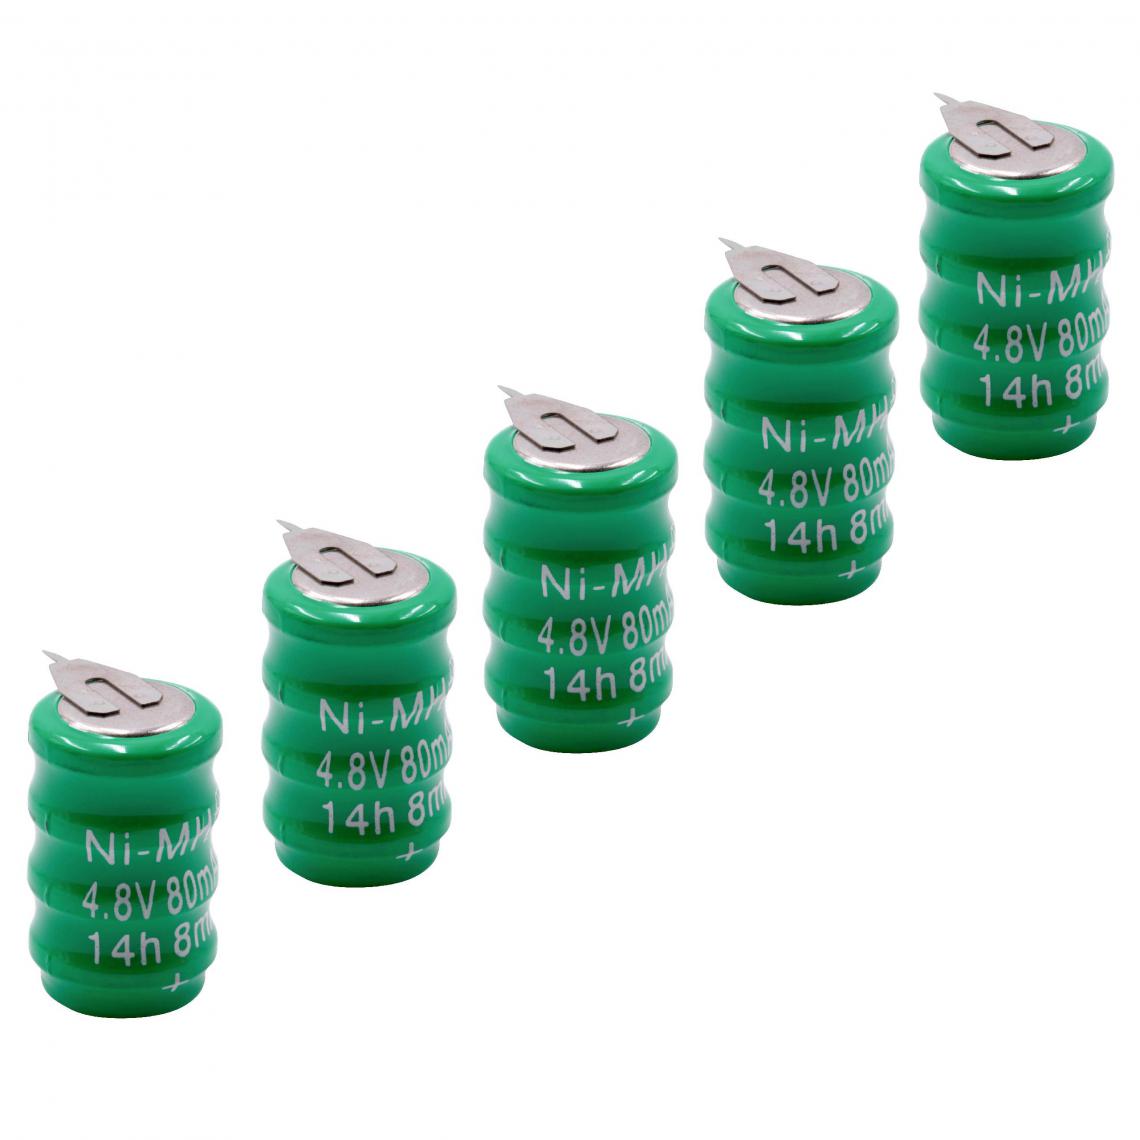 Vhbw - vhbw 5x NiMH pile bouton de remplacement pour type V80H 2 épingles 80mAh 4,8V convient pour les batteries de modélisme etc. - Autre appareil de mesure